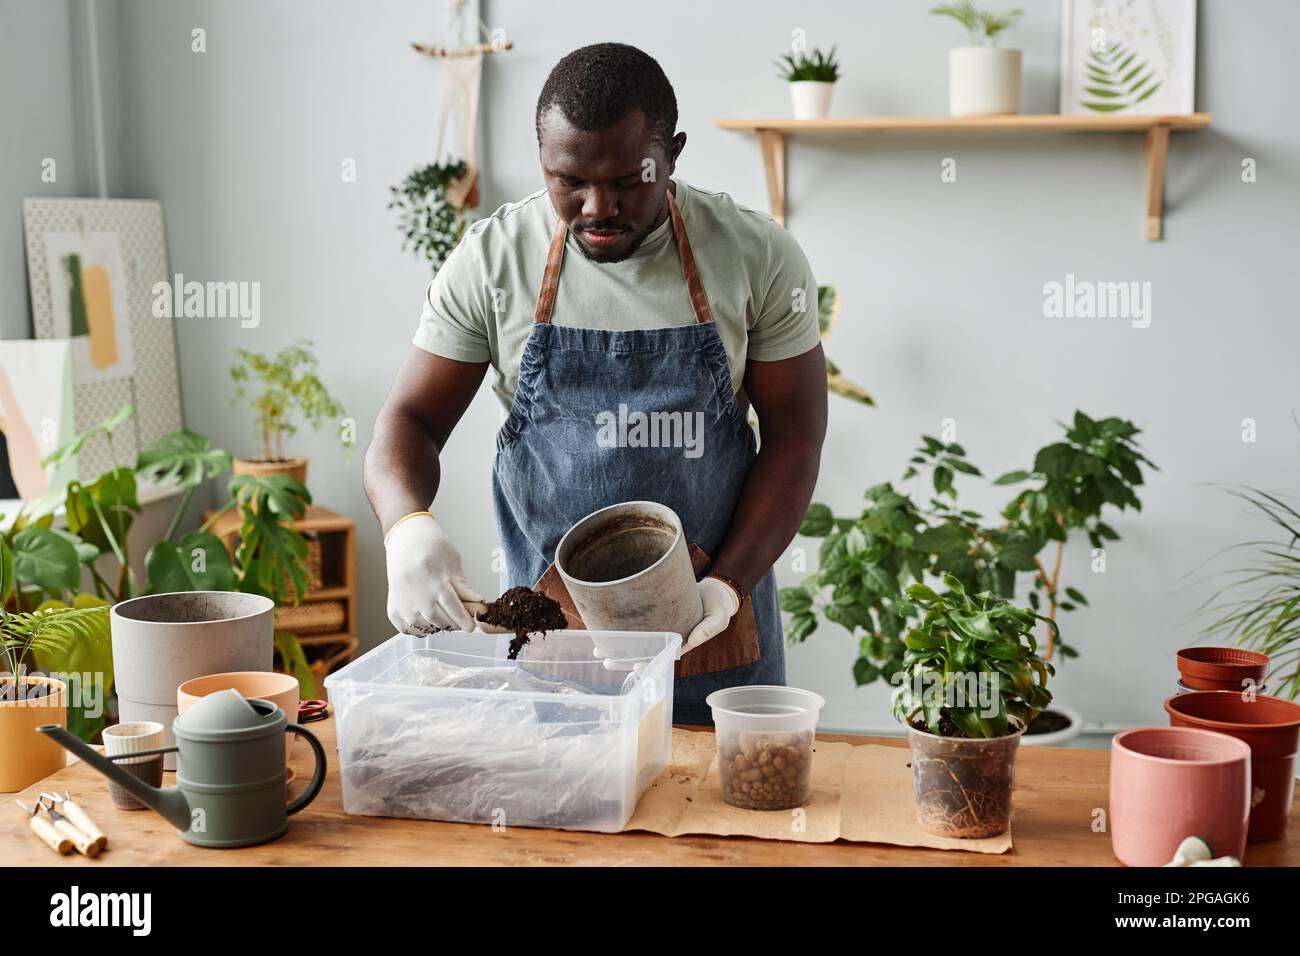 Porträt des Schwarzen, der im Haus Pflanzen umtopft und frische Bodenmischungen, Kopierraum, sammelt Stockfoto